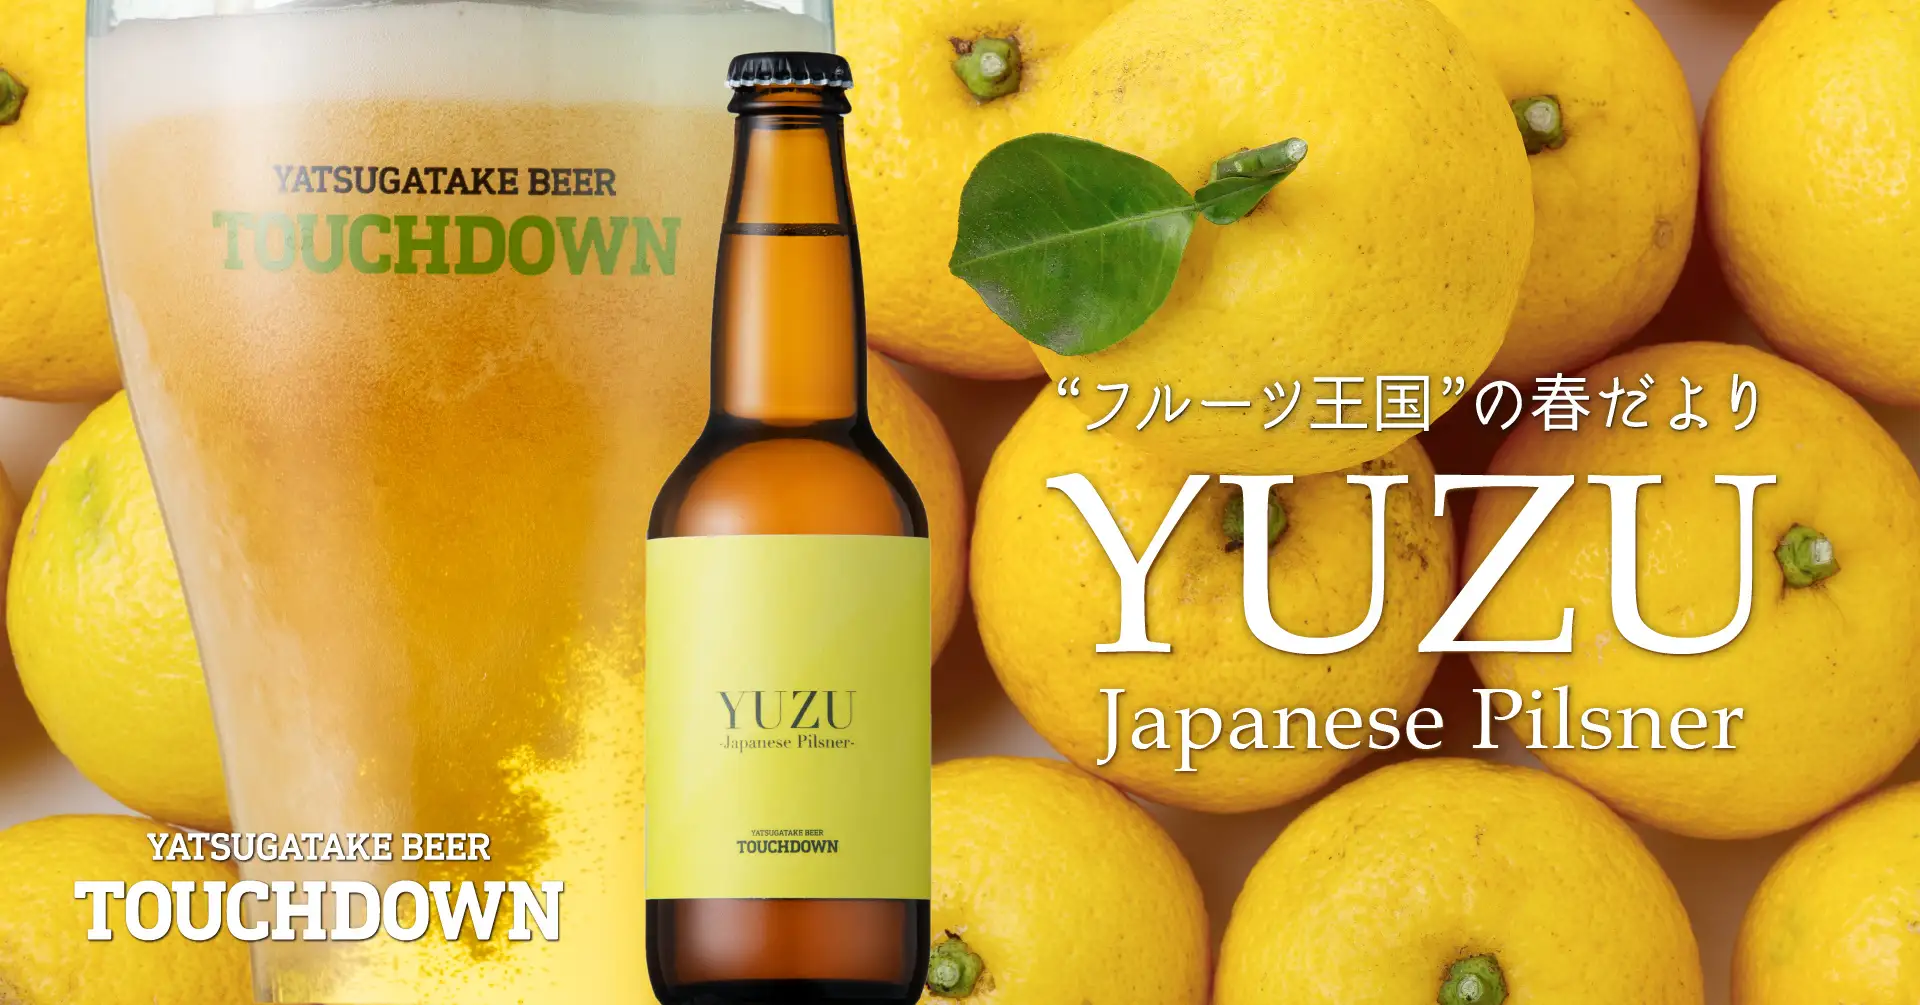 八ヶ岳ブルワリー、クラフトビール「八ヶ岳ビール タッチダウン」シリーズから限定醸造品「YUZU Japanese Pilsner」を発売